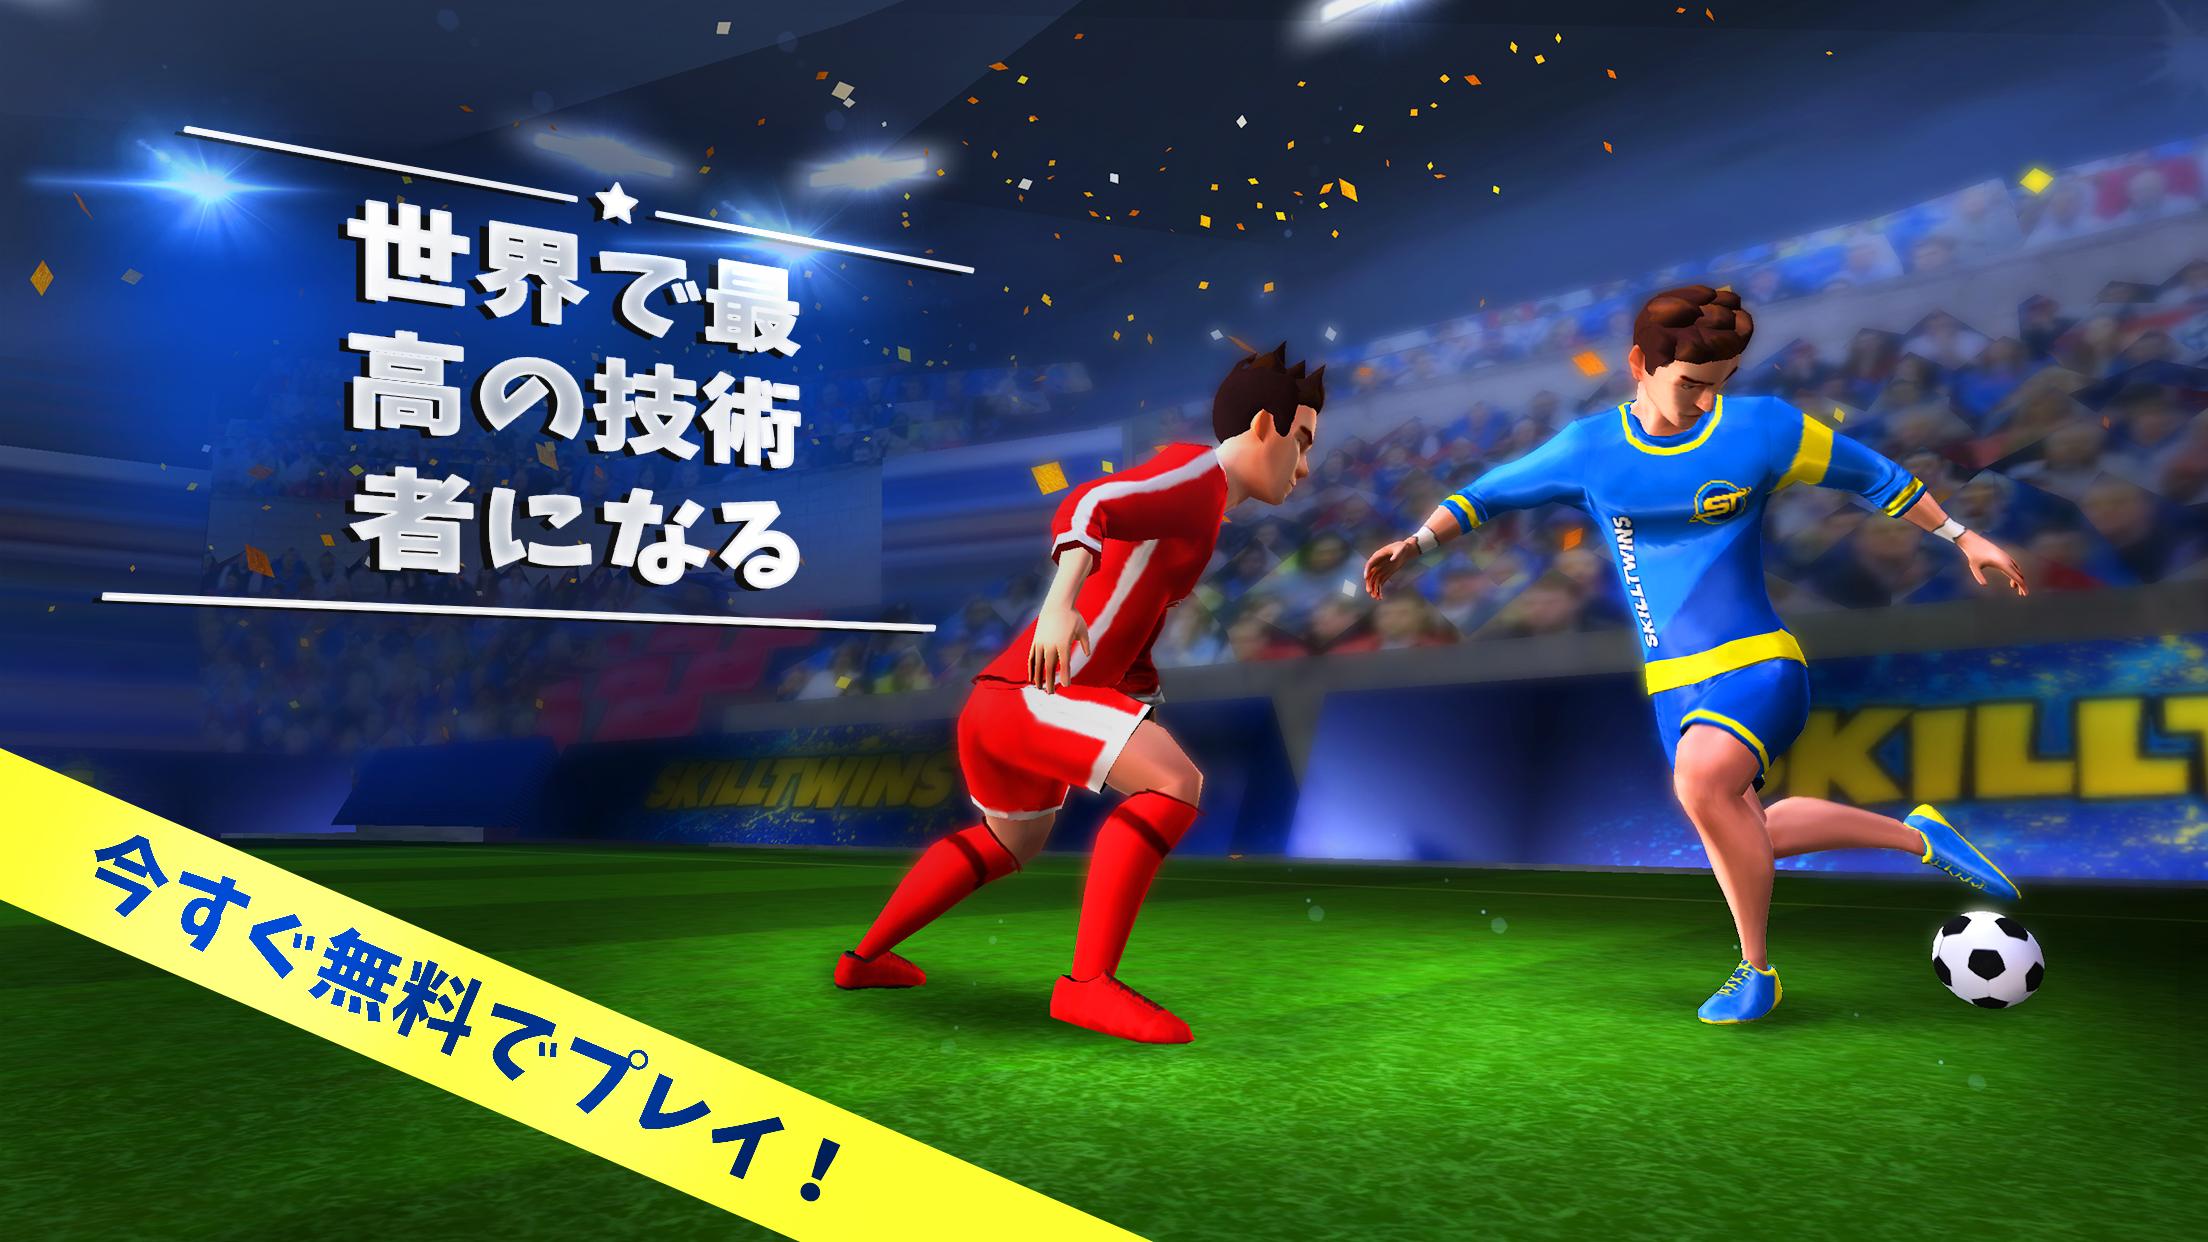 無料で Skilltwins サッカーゲーム サッカースキル アプリの最新版 Apk1 5 2をダウンロードー Android用 Skilltwins サッカーゲーム サッカースキル Apk の最新バージョンをダウンロード Apkfab Com Jp